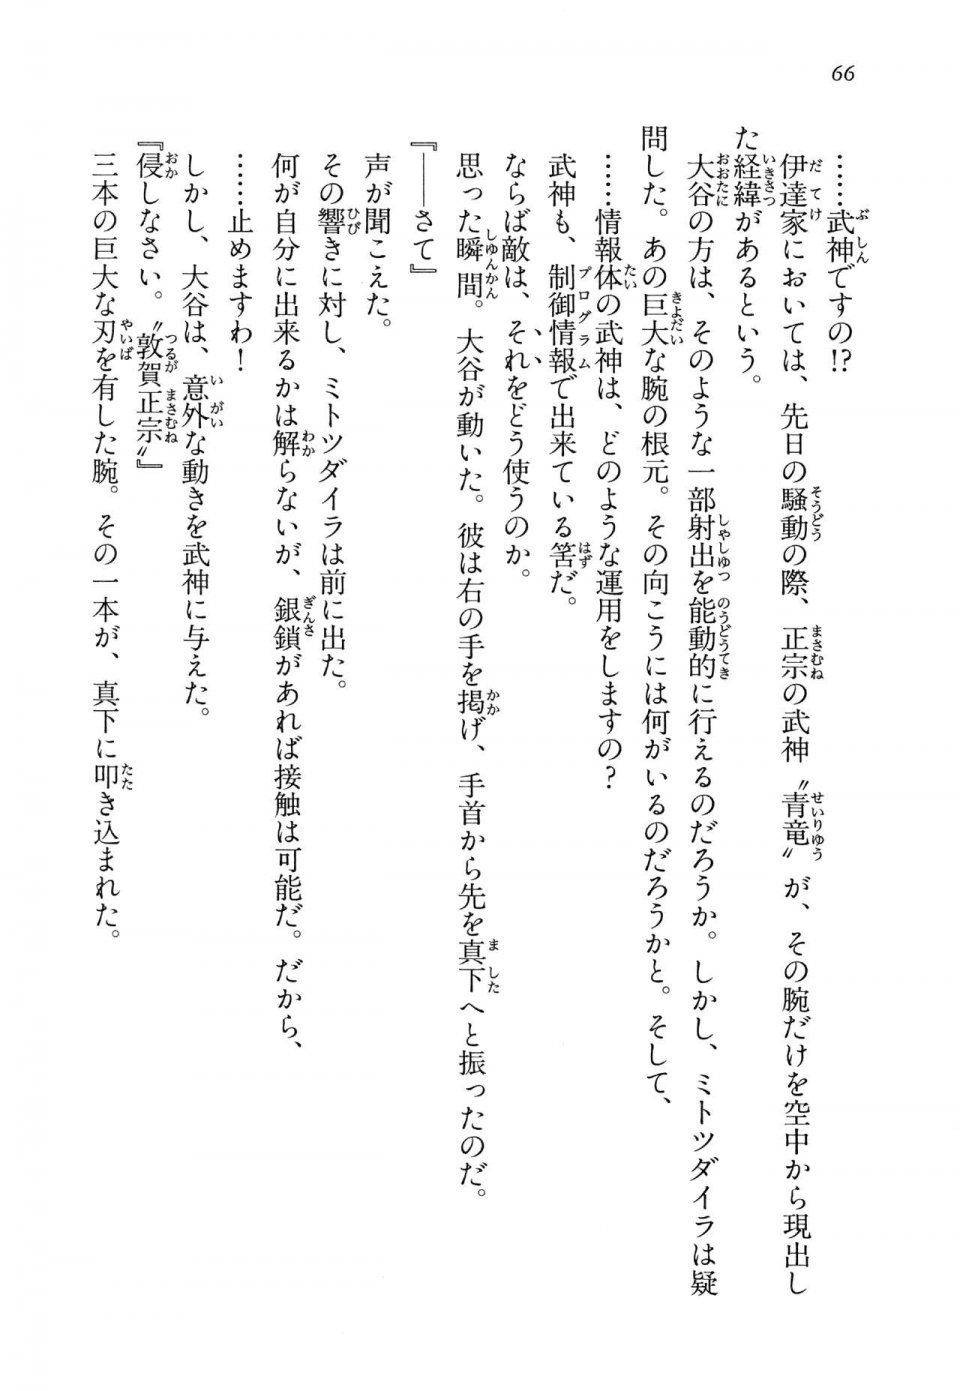 Kyoukai Senjou no Horizon LN Vol 14(6B) - Photo #66